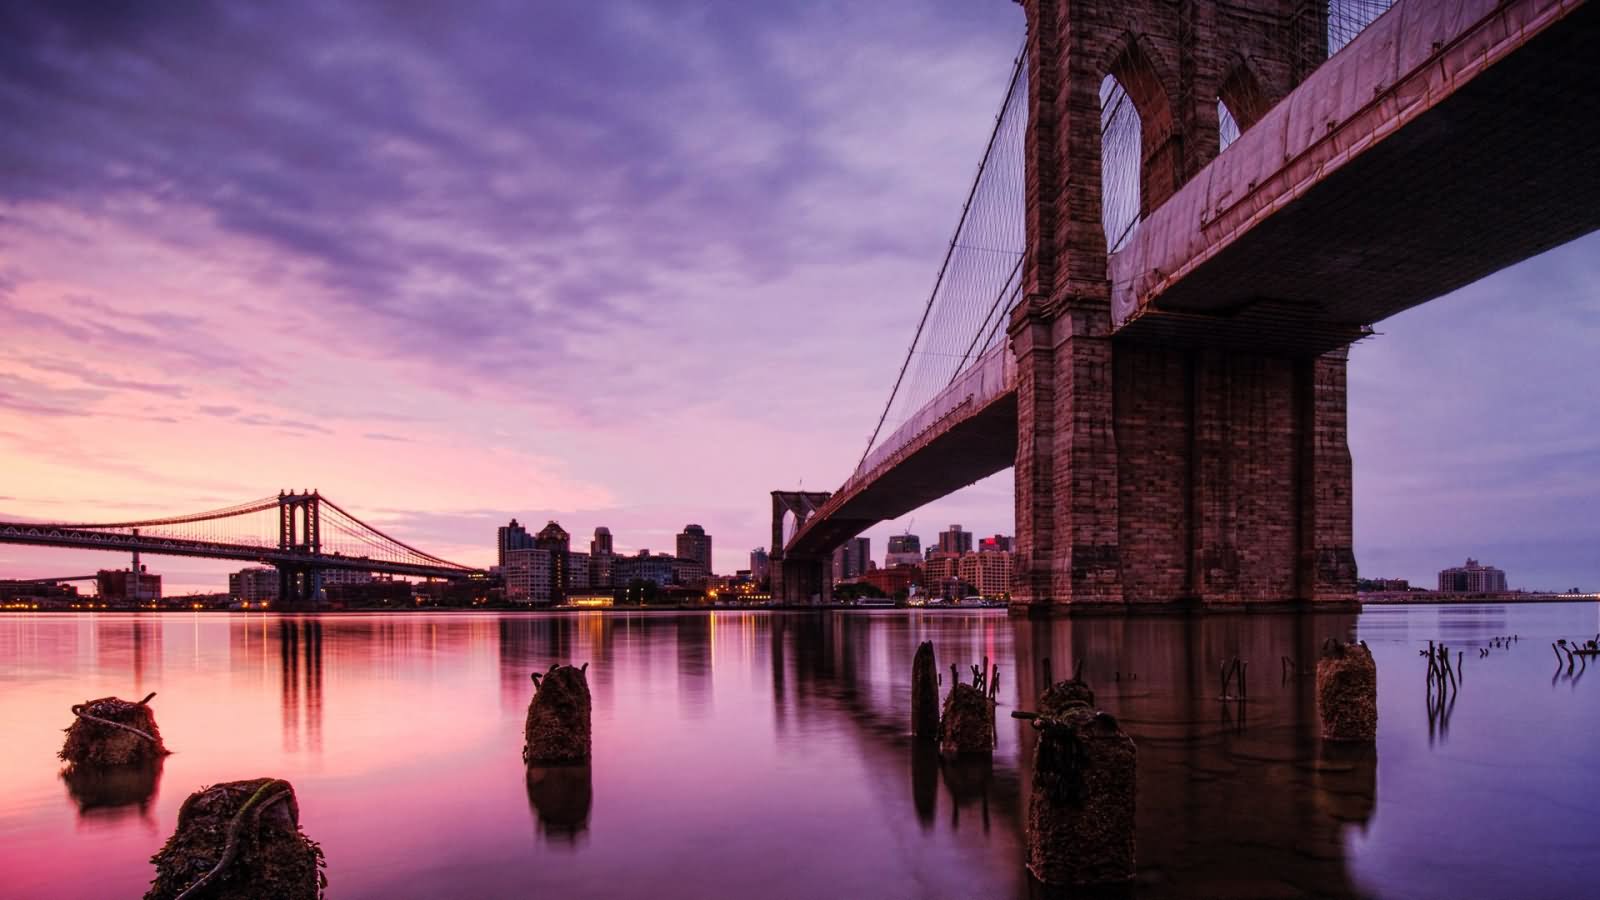 Beautiful Scene Of The Brooklyn Bridge